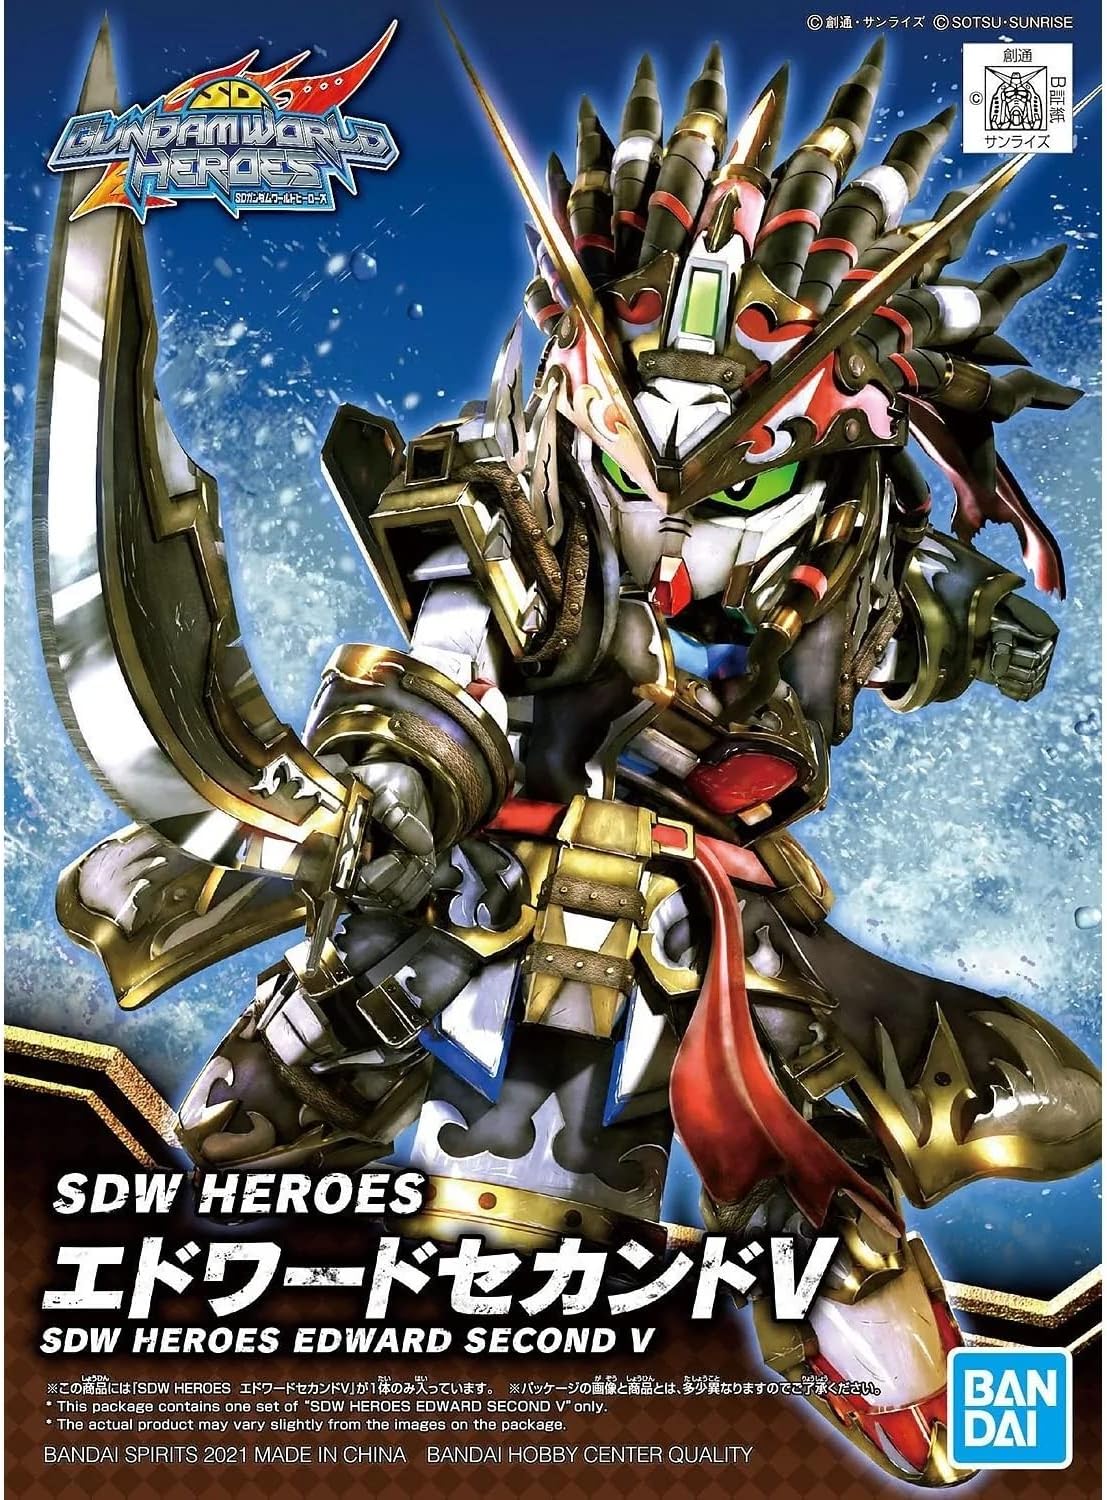 SD Gundam World Heroes Edward Second V | animota